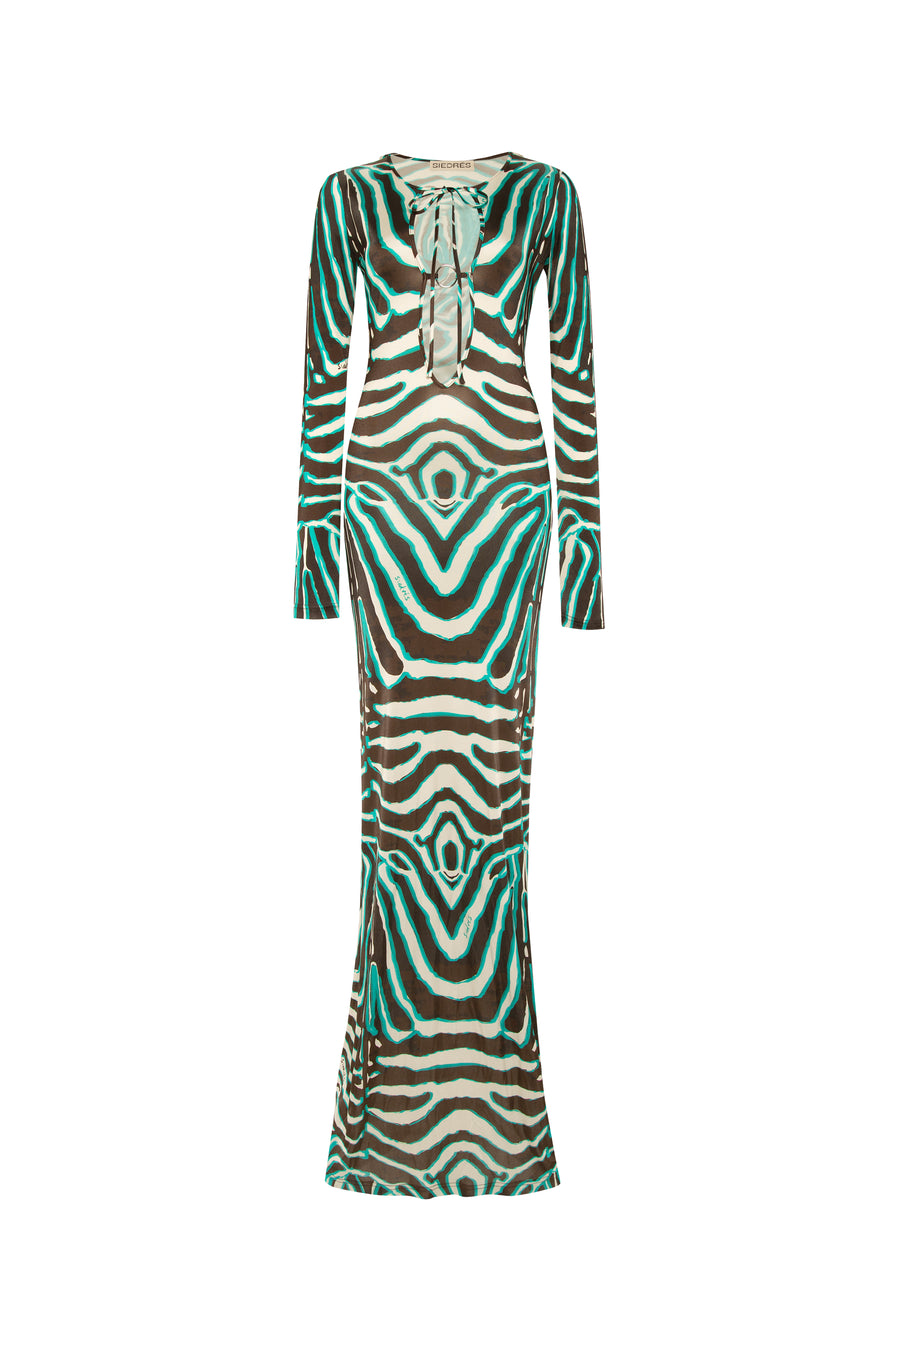 MAGY - Tie-front zebra printed maxi dress